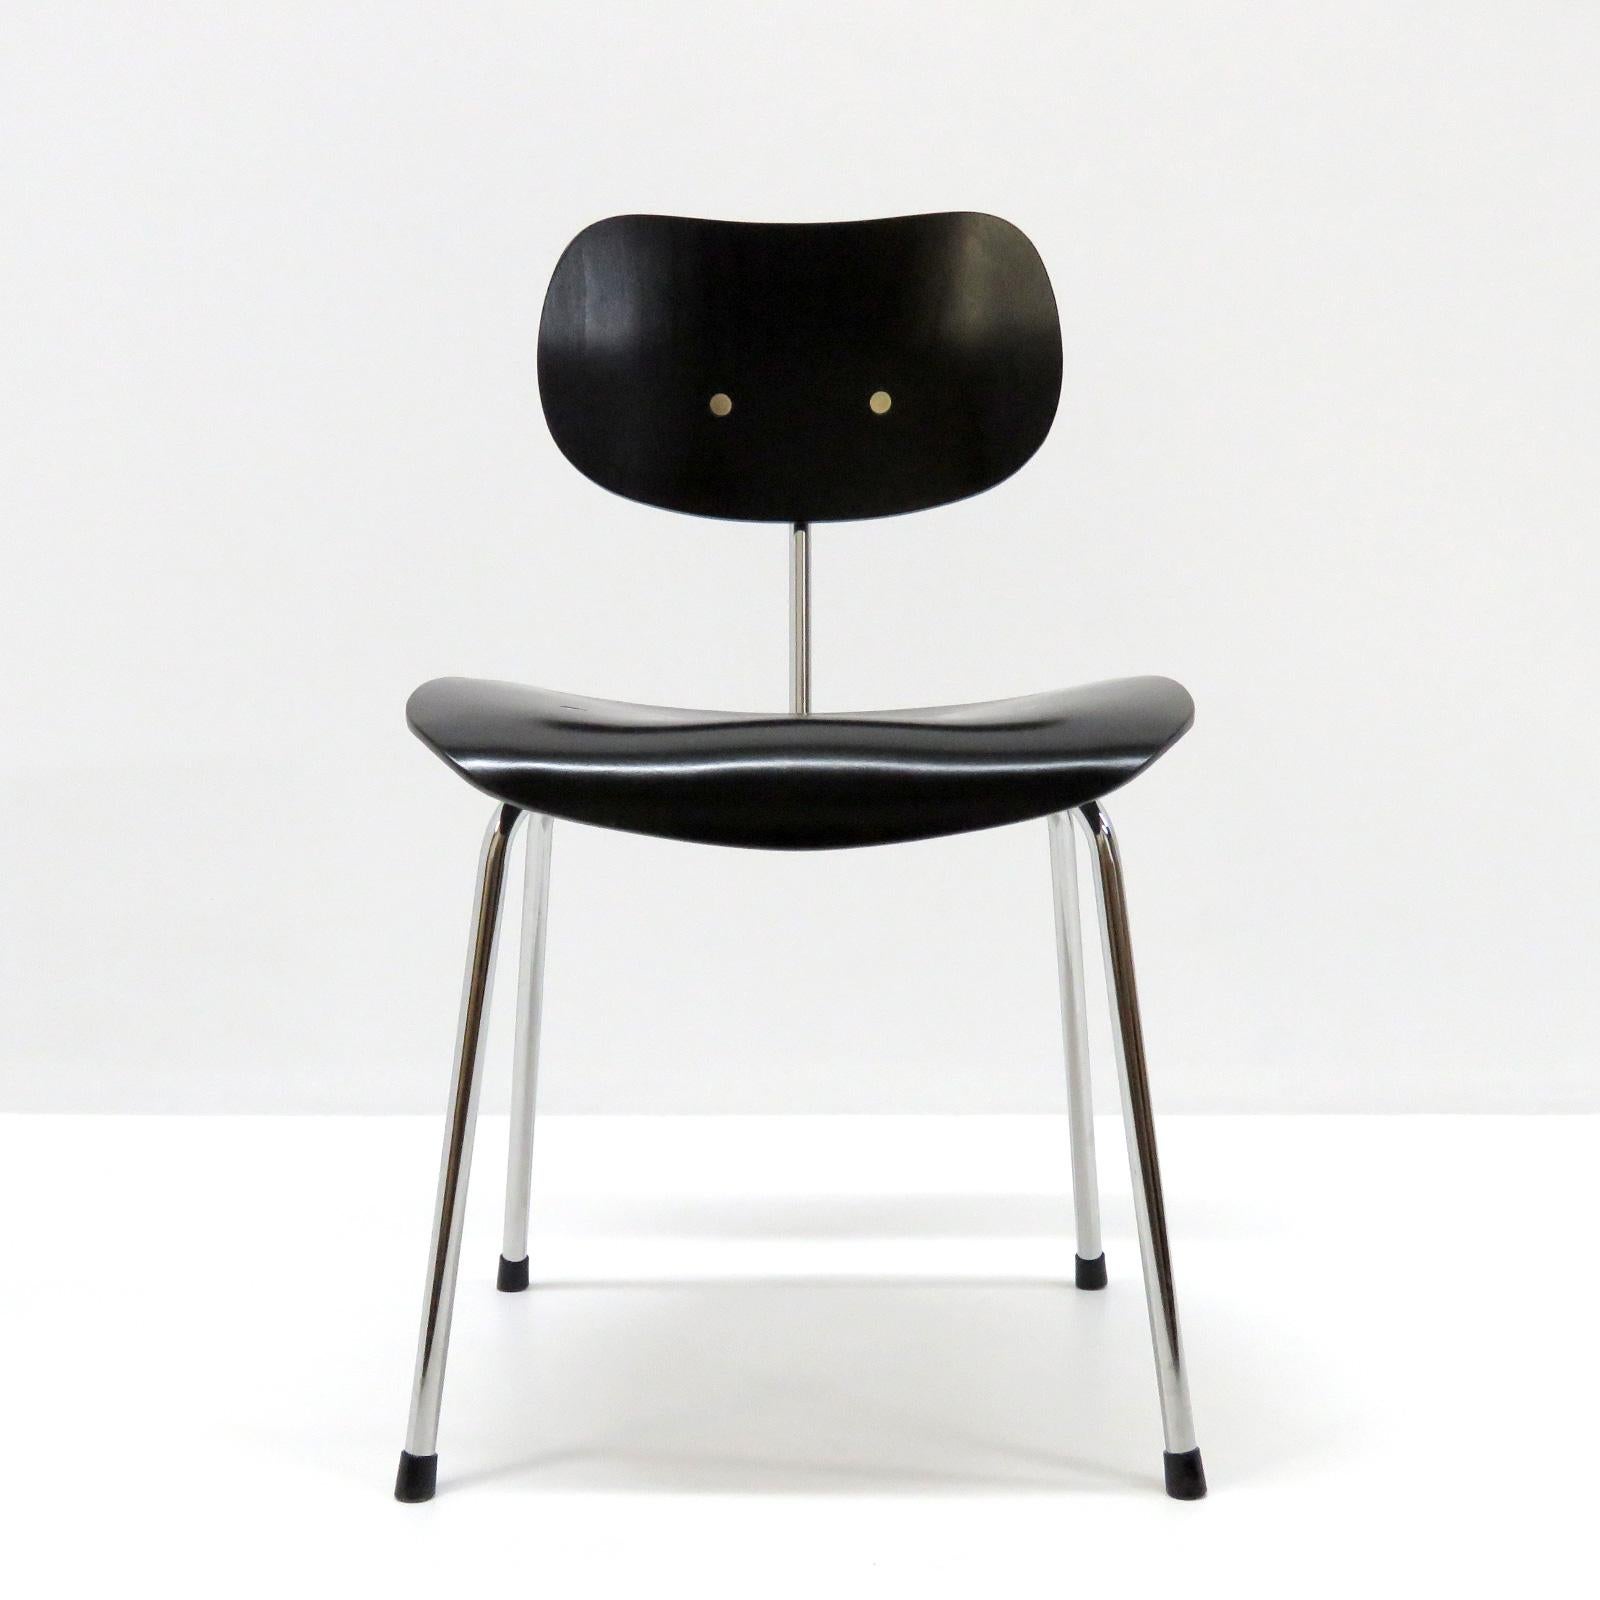 Wunderschöne Esszimmerstühle Modell SE 68 von Egon Eiermann für Wilde & Spieth, Stahlrohr, verchromt, mit schwarz lackierten, ergonomisch geformten Holzsitzen, bezeichnet. Vier Stühle verfügbar. Individuelle Preisgestaltung.